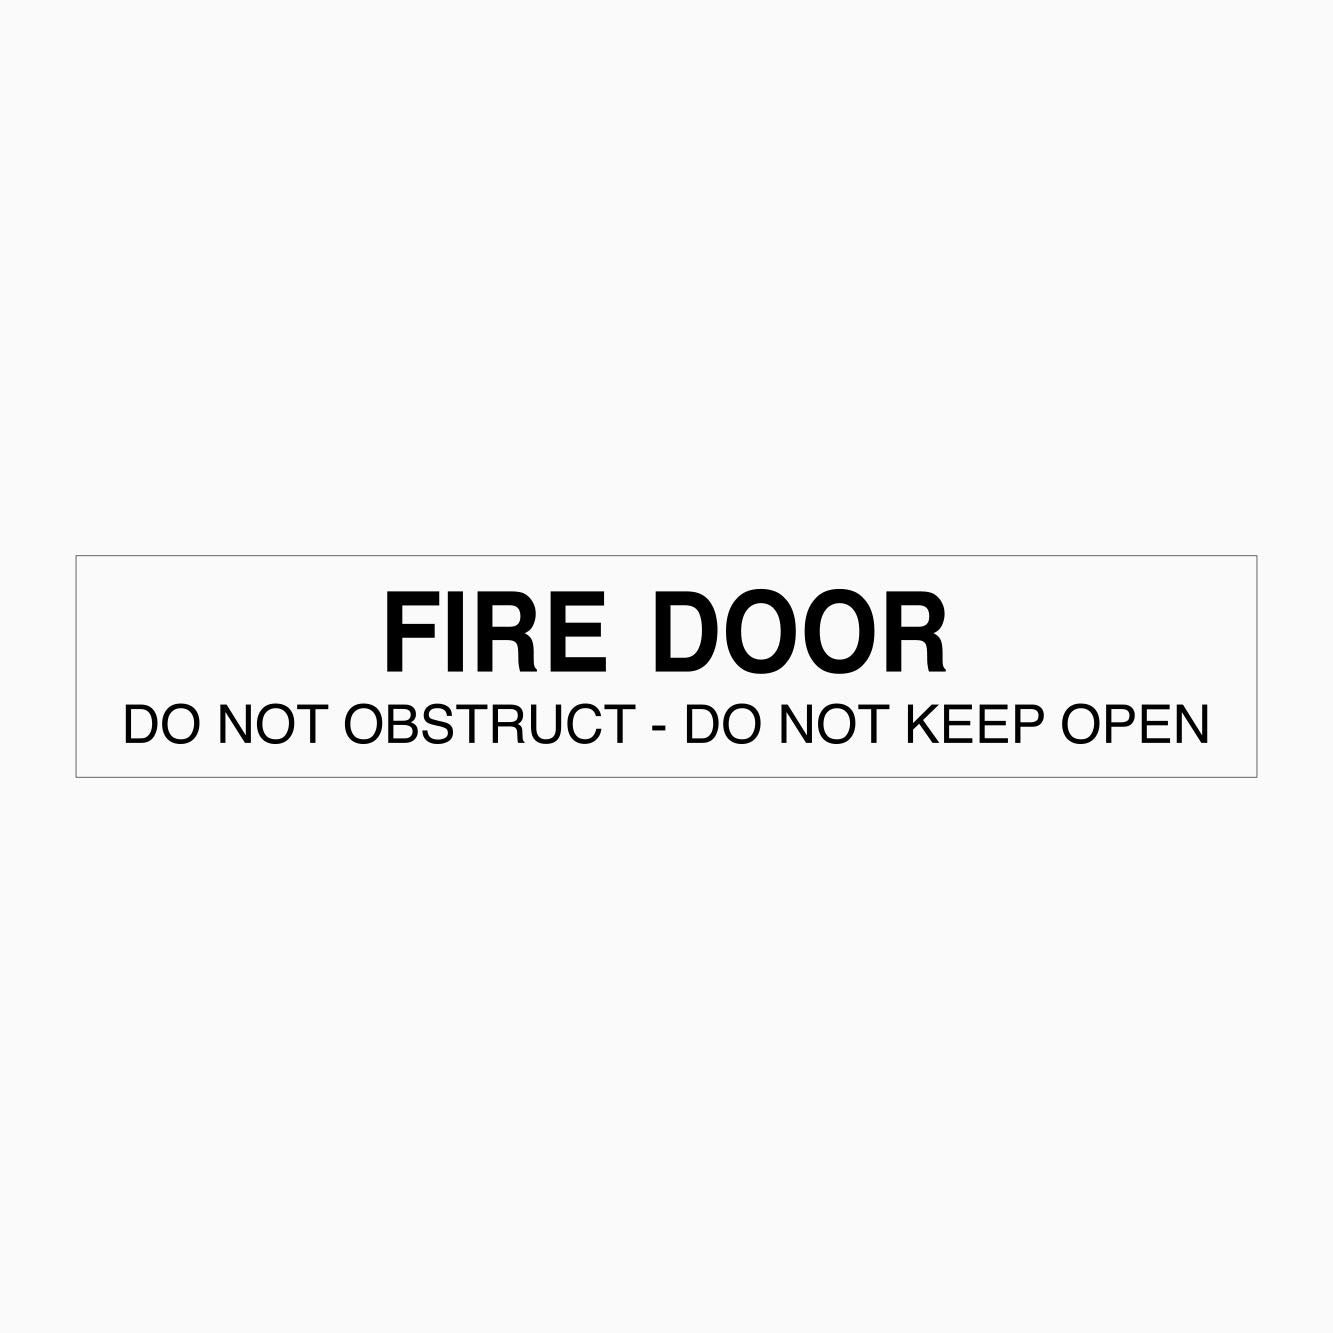 FIRE DOOR SIGN DO NOT OBSTRUCT - DO NOT KEEP OPEN - GET SIGNS